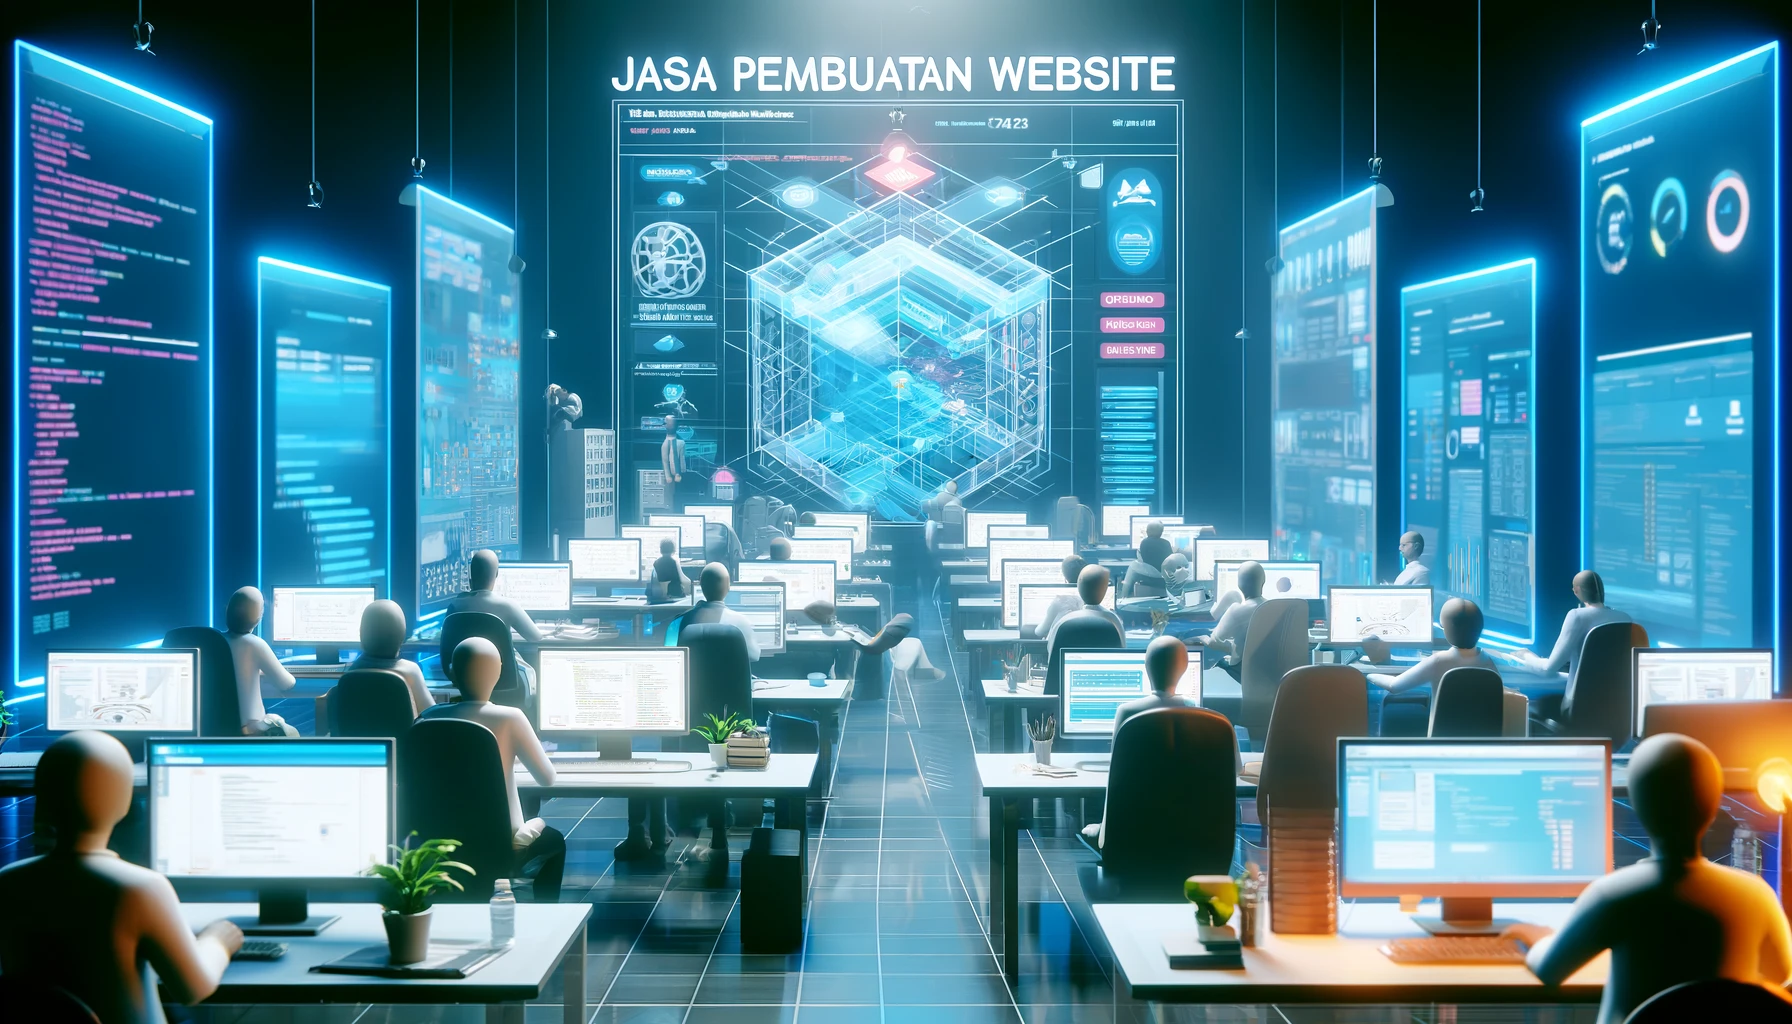 Jasa Pembuatan Website Murah di Surabaya: Solusi Digital untuk Bisnis Anda